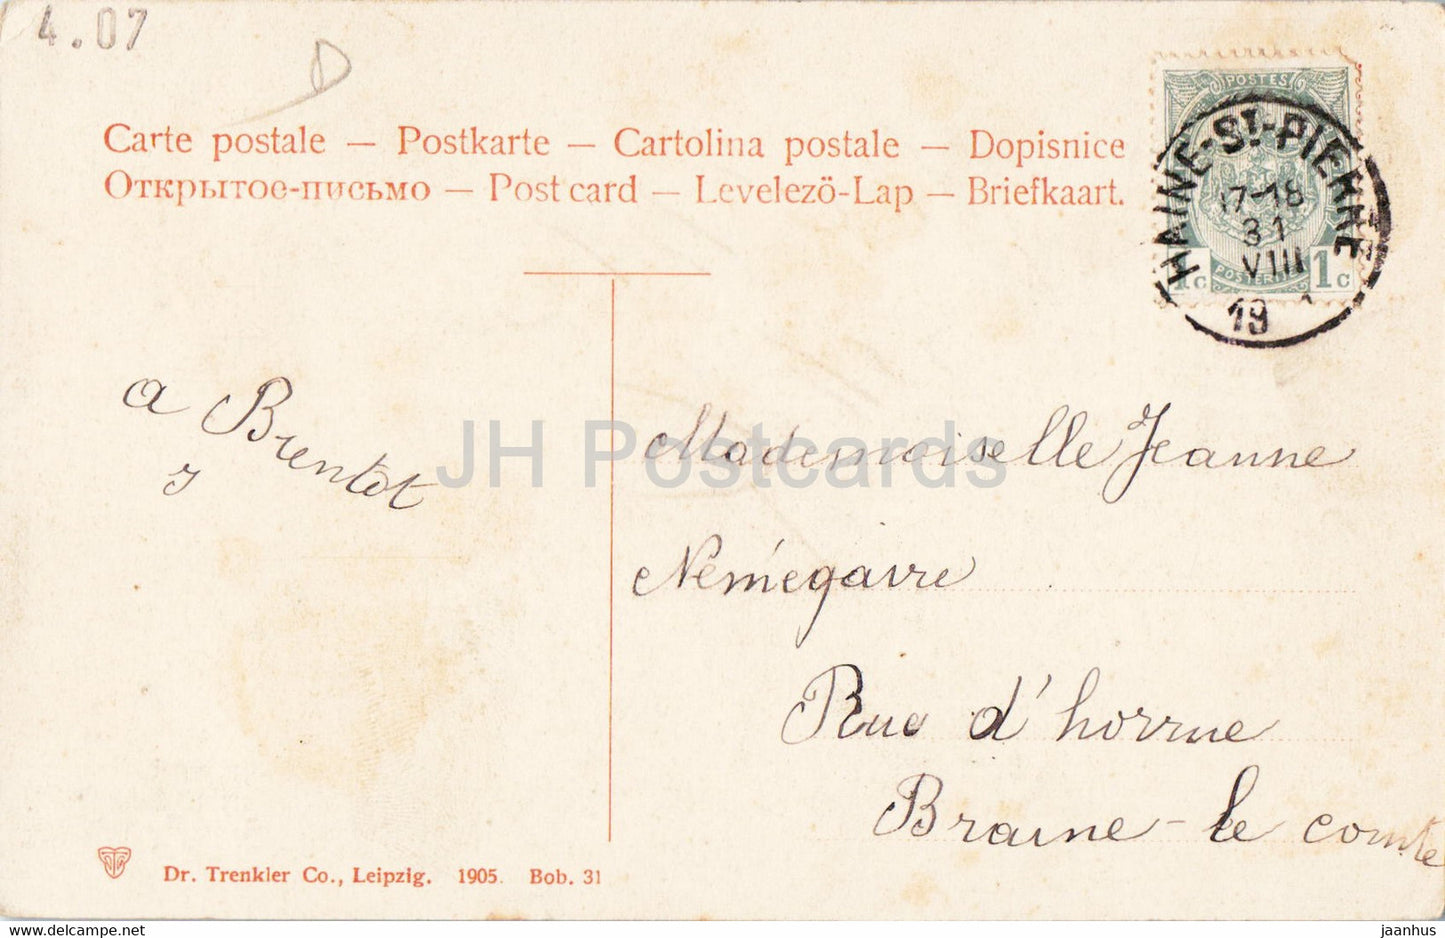 Blausee - Felsenzimmer - 1905 - alte Postkarte - Schweiz - gebraucht